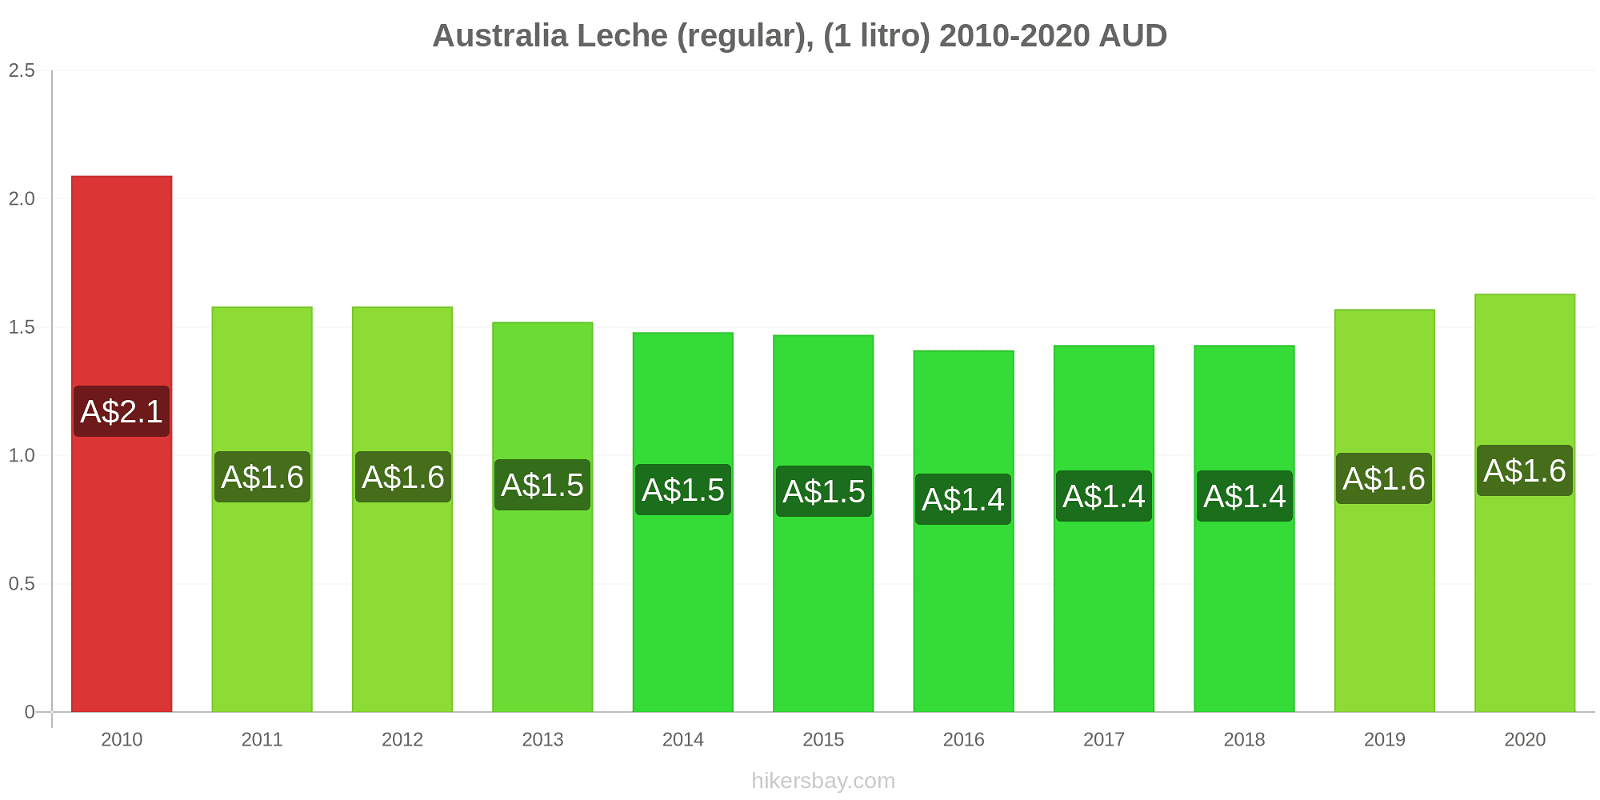 Australia cambios de precios Leche (Regular), (1 litro) hikersbay.com